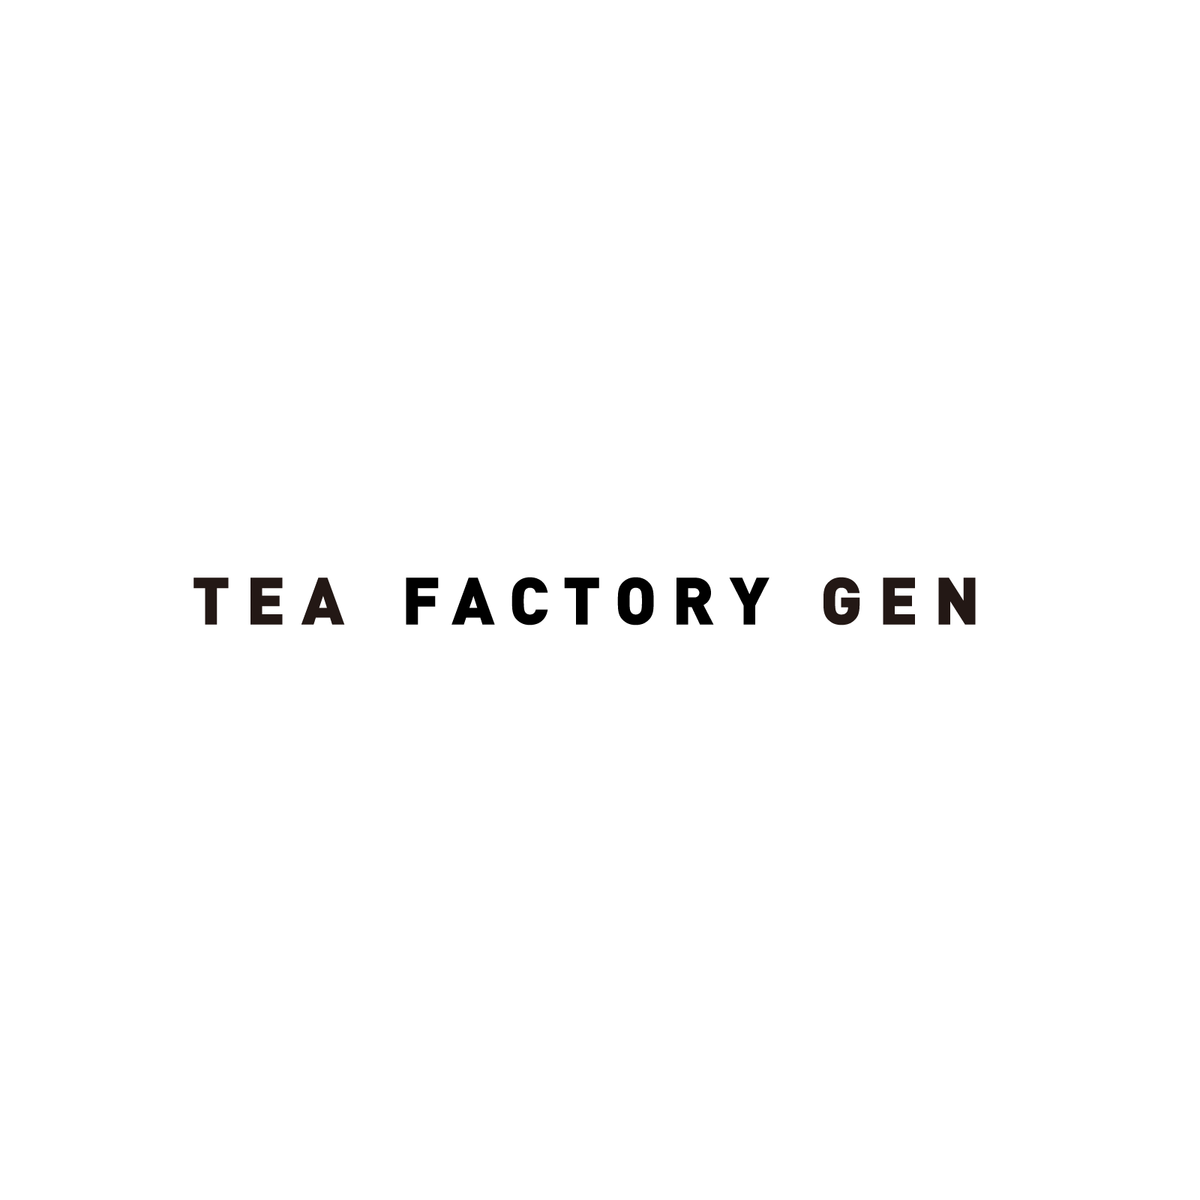 TEA FACTORY GEN